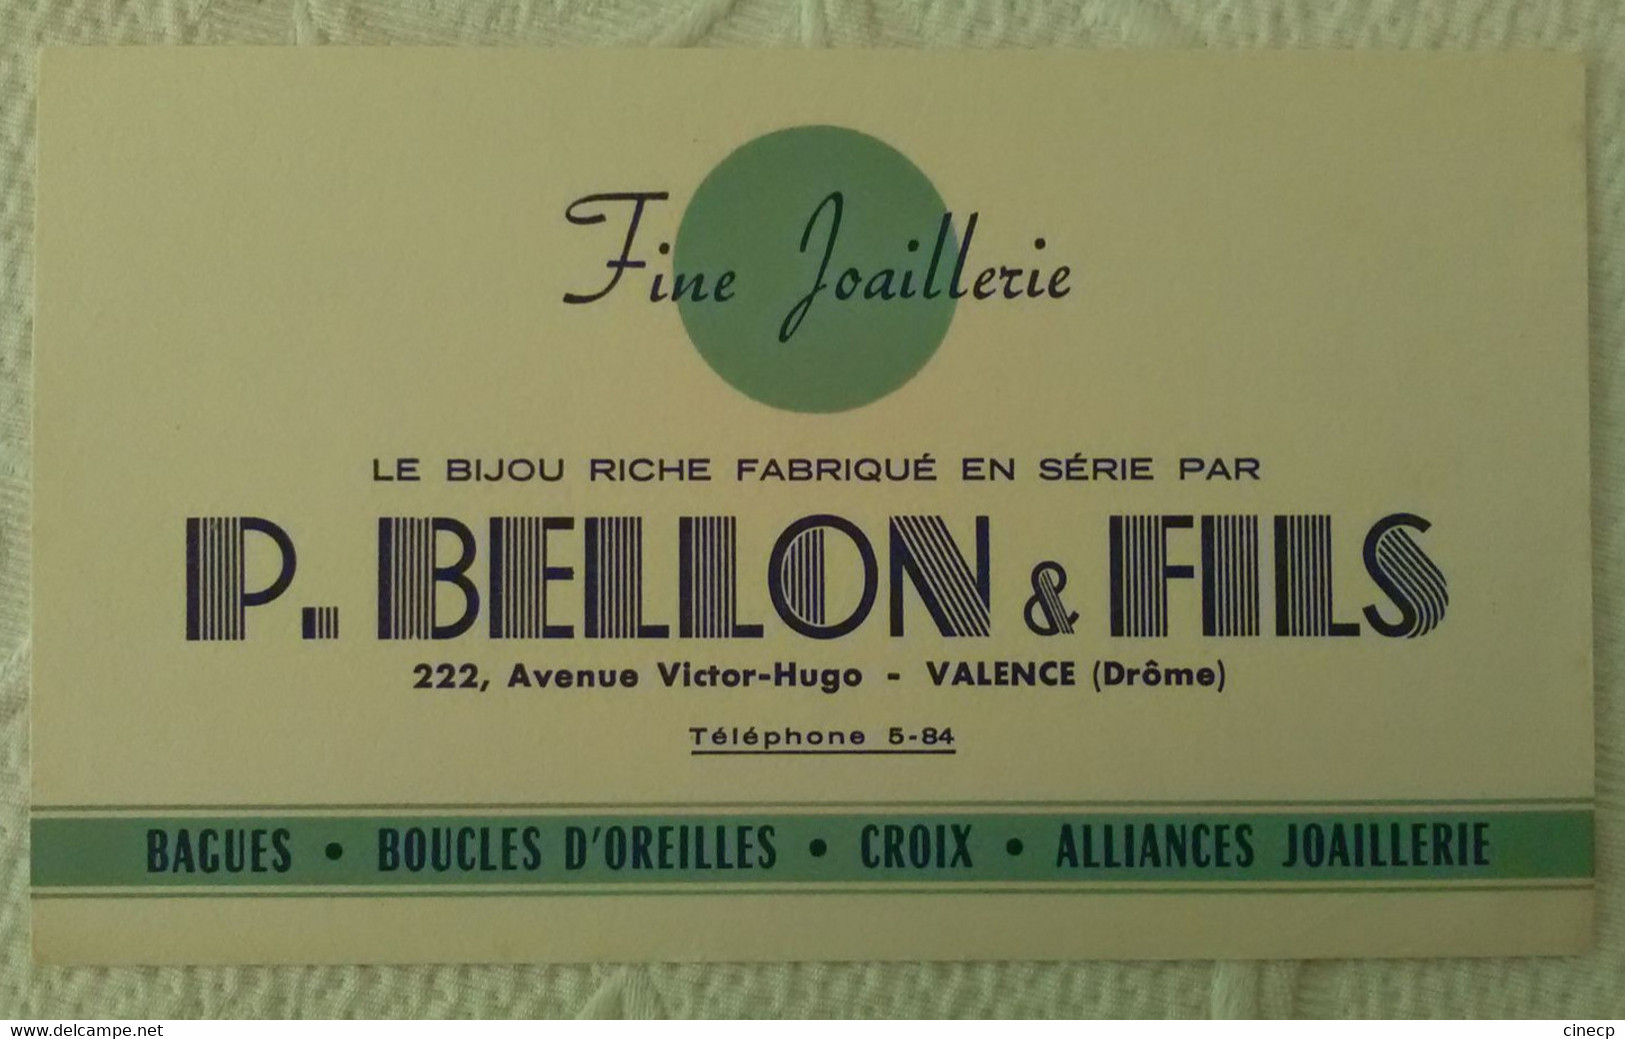 Buvard LE BIJOU RICHE Fabriqué Par P. BELLON & FILS FINE JOAILLERIE ILLUSTRATEUR VALENCE DRÔME - Perfume & Beauty